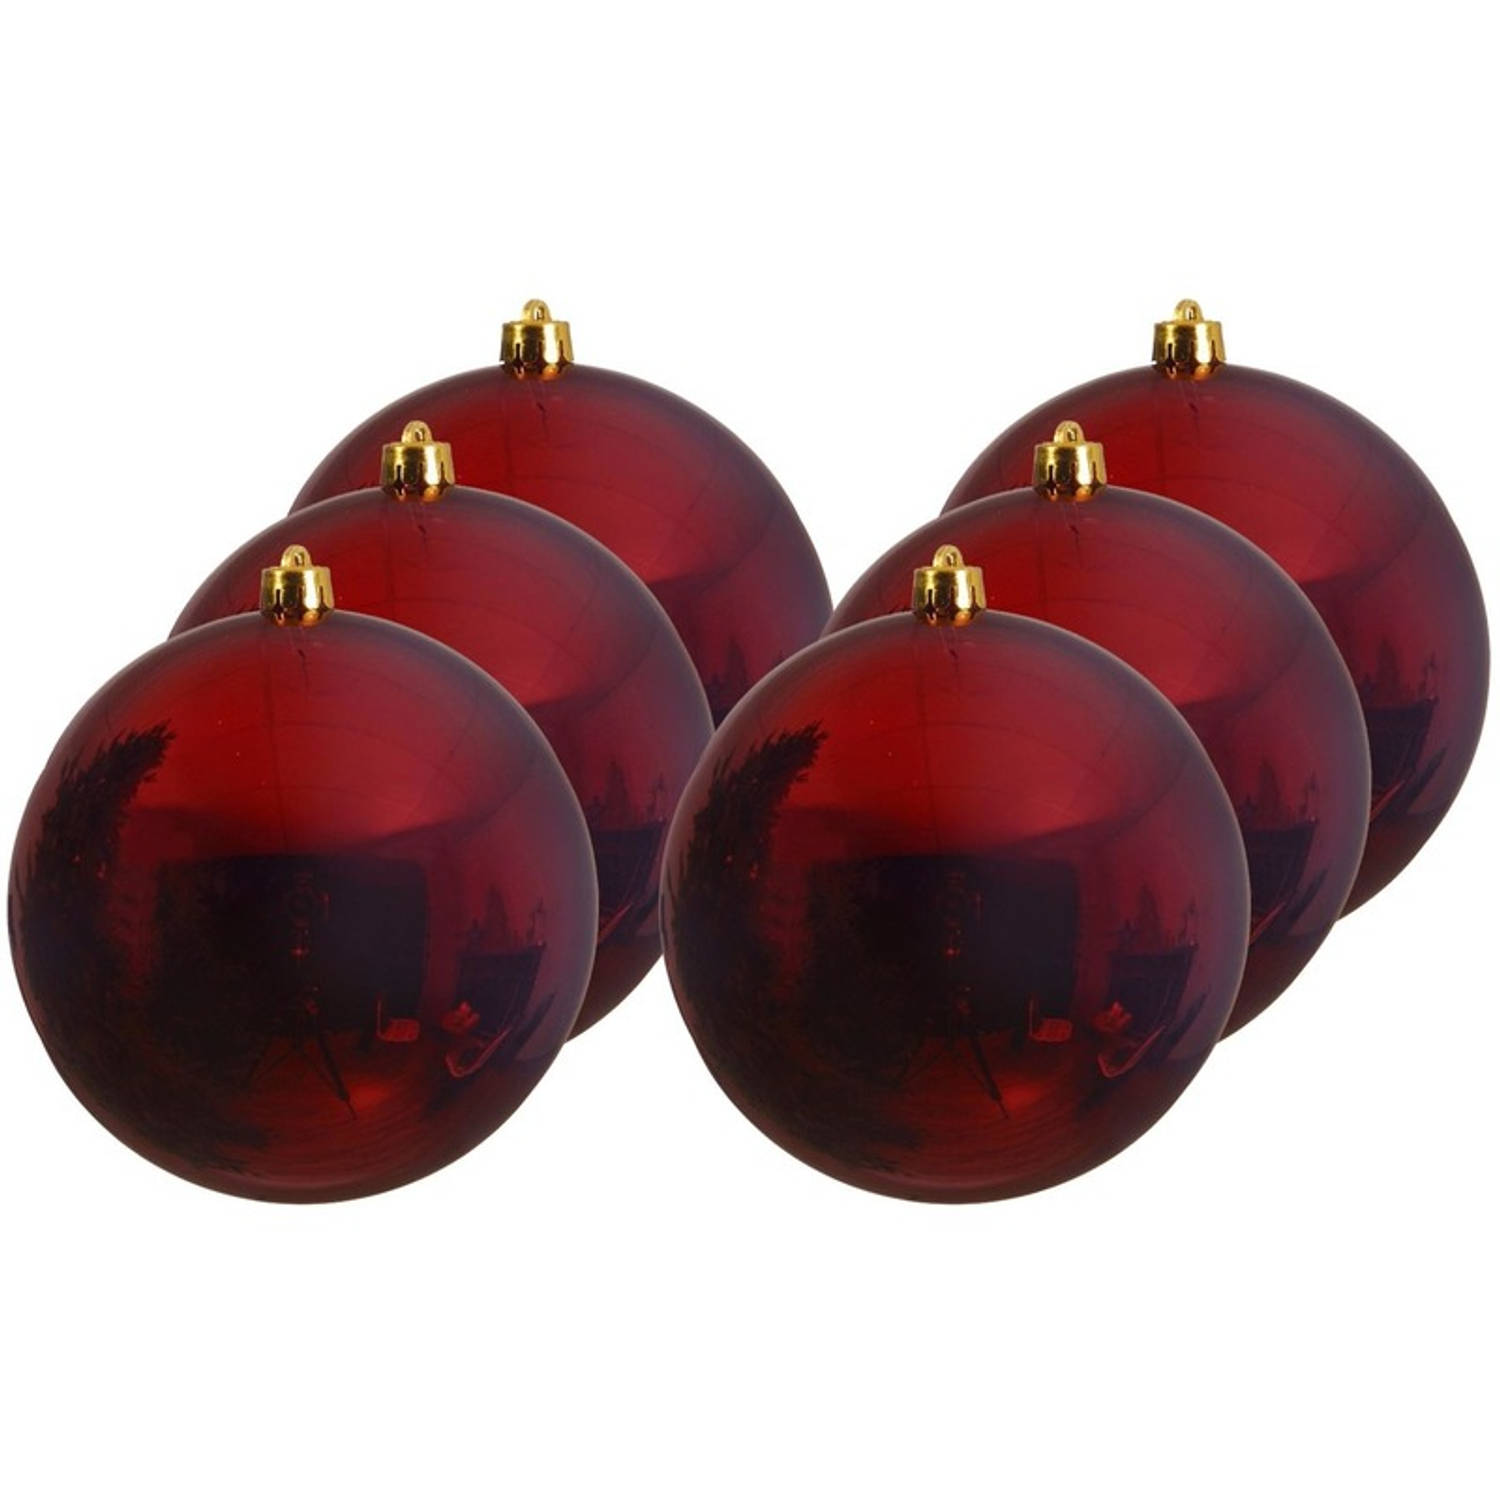 6x Grote Donkerrode Kunststof Kerstballen Van 20 Cm Glans Donkerrode Kerstboom Versiering